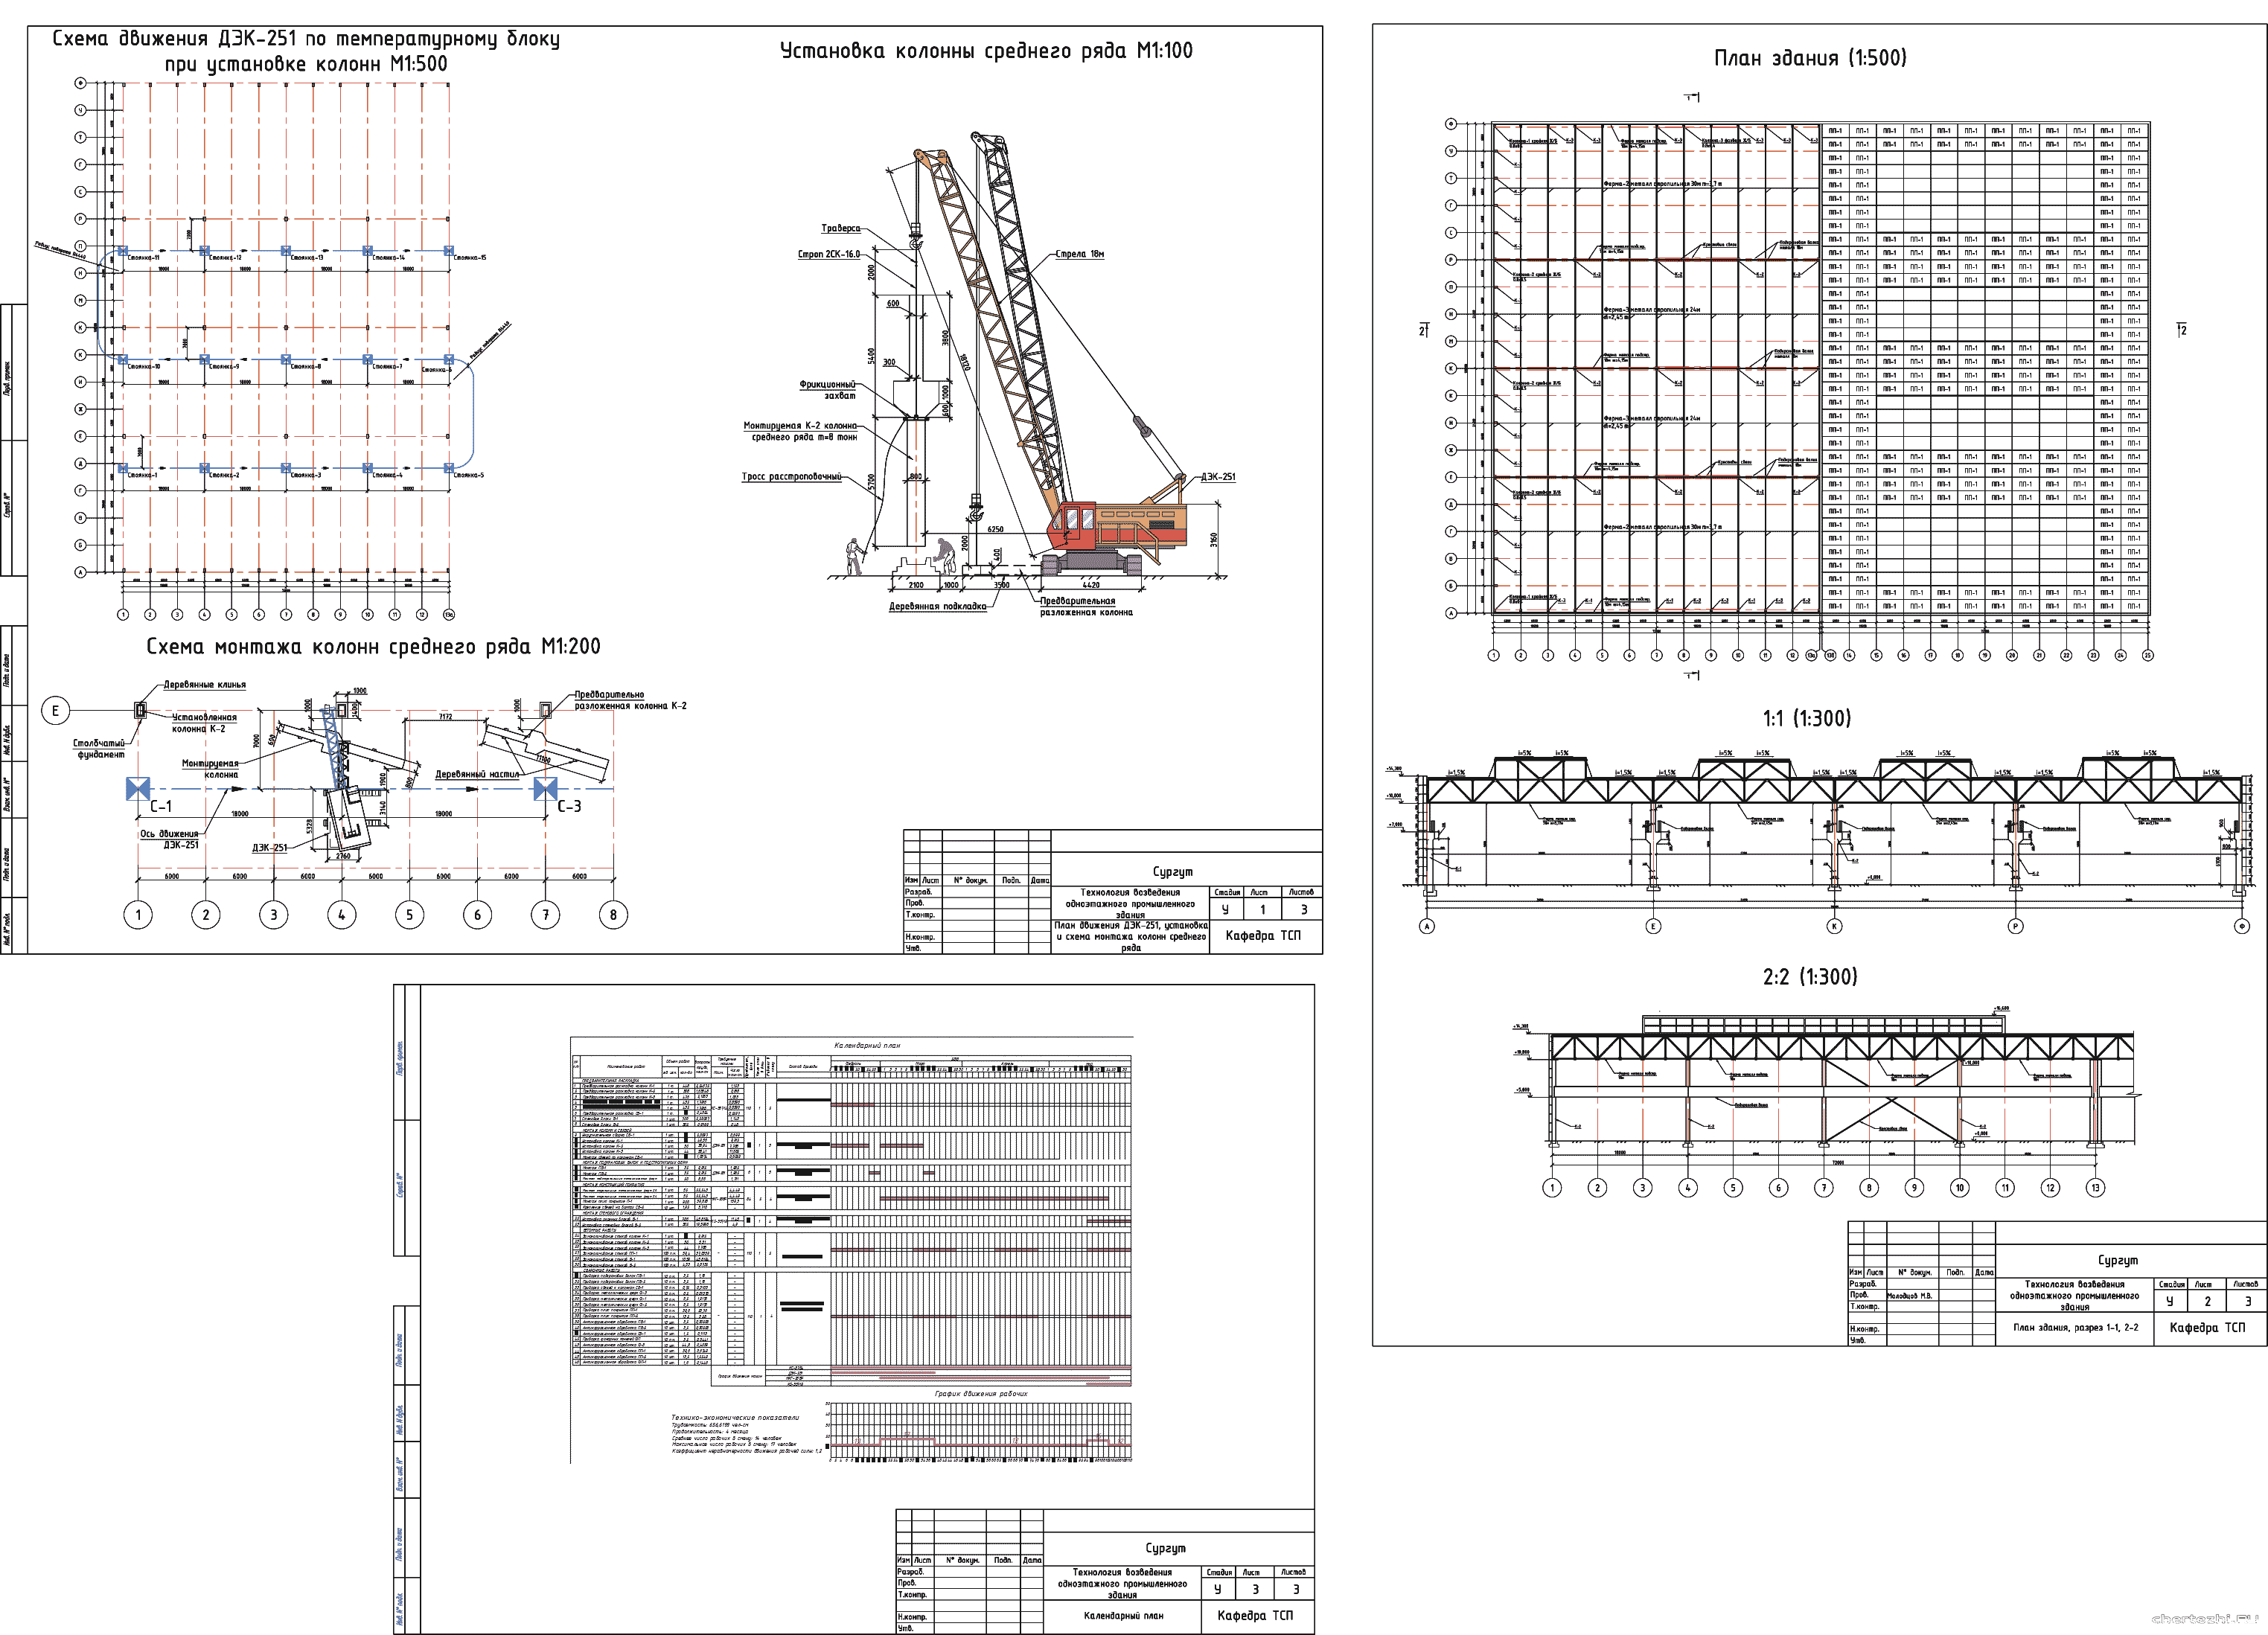 Курсовой проект - Технологическая карта на монтаж колонны среднего ряда промышленного здания 144 х 108 м в г. Сургут